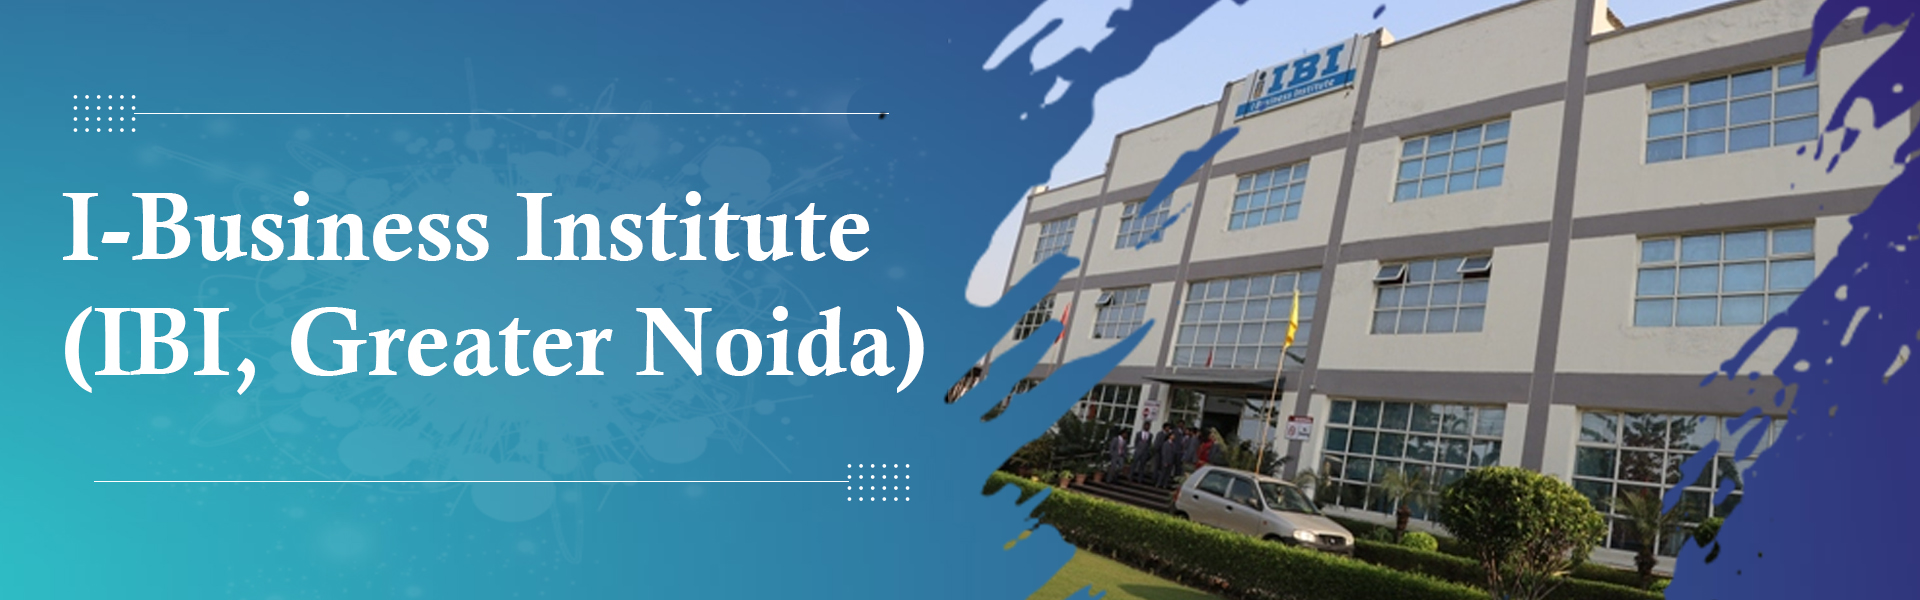 I-Business Institute (IBI, Greater Noida)